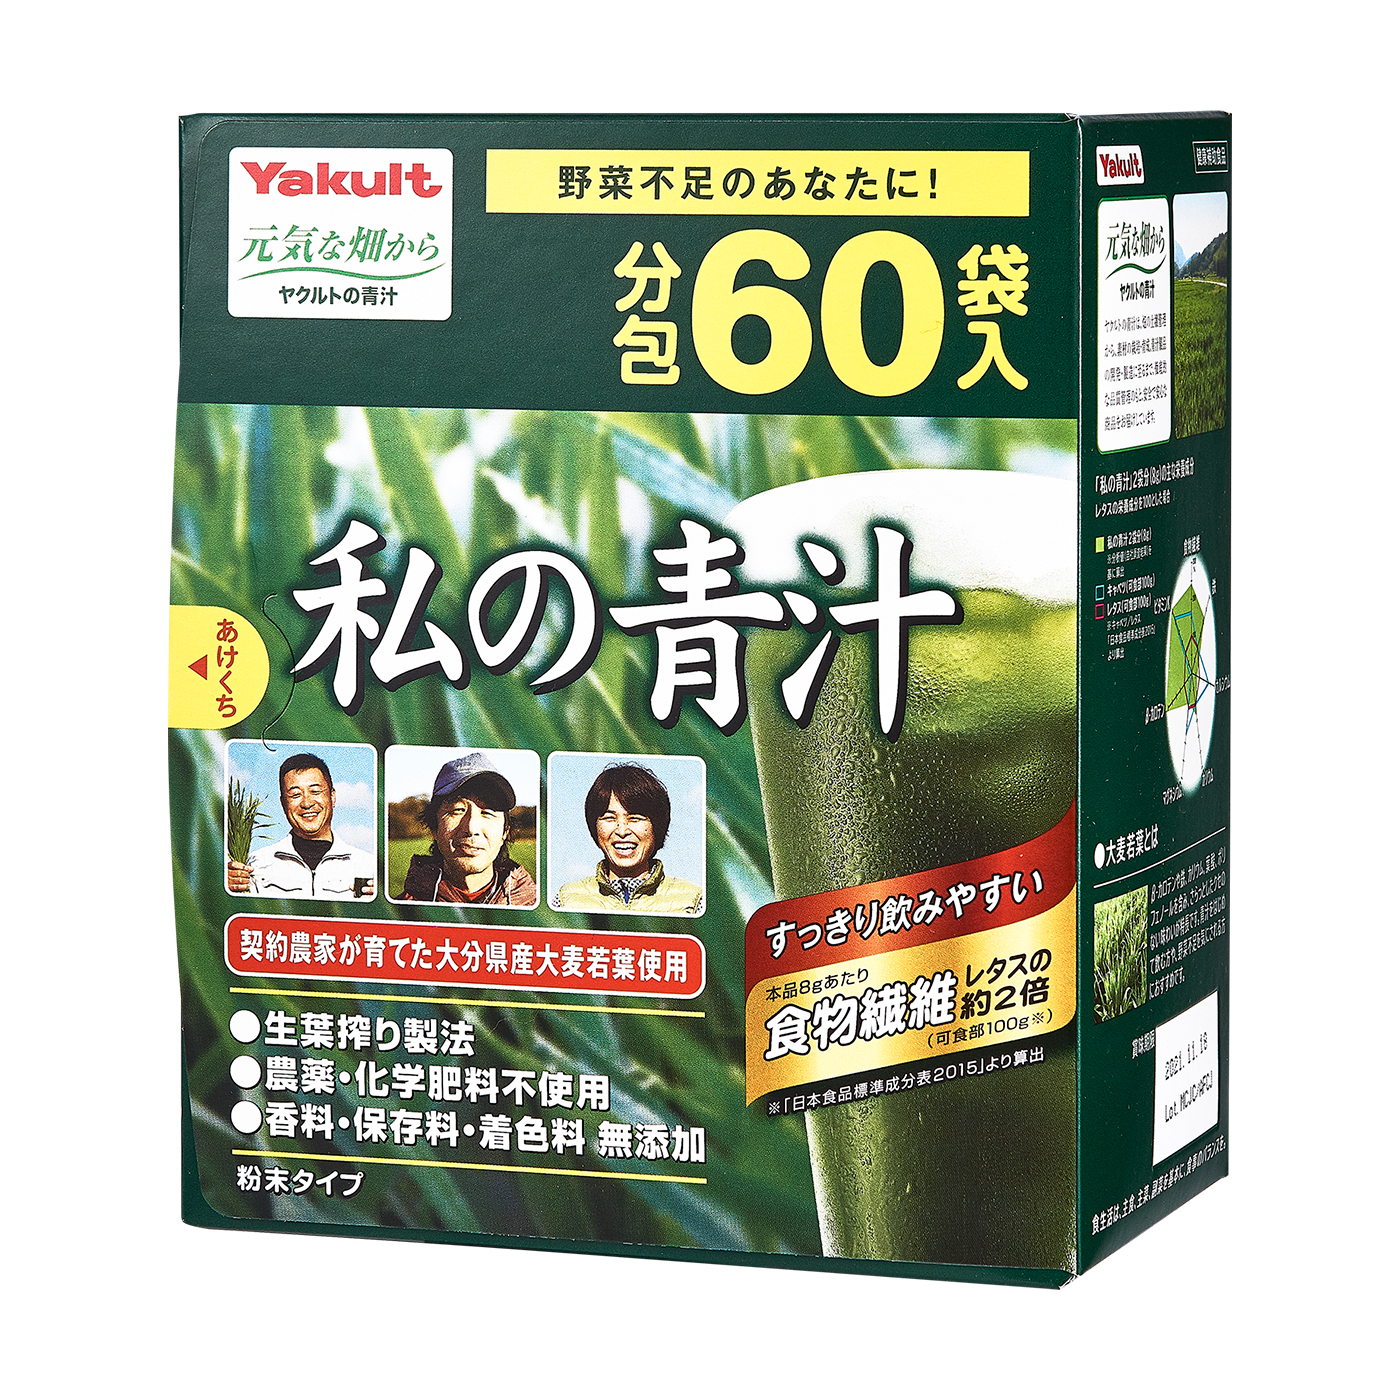 超格安価格 ヤクルト カラダ計画 大麦若葉(5g*60袋入) 特定保健用食品